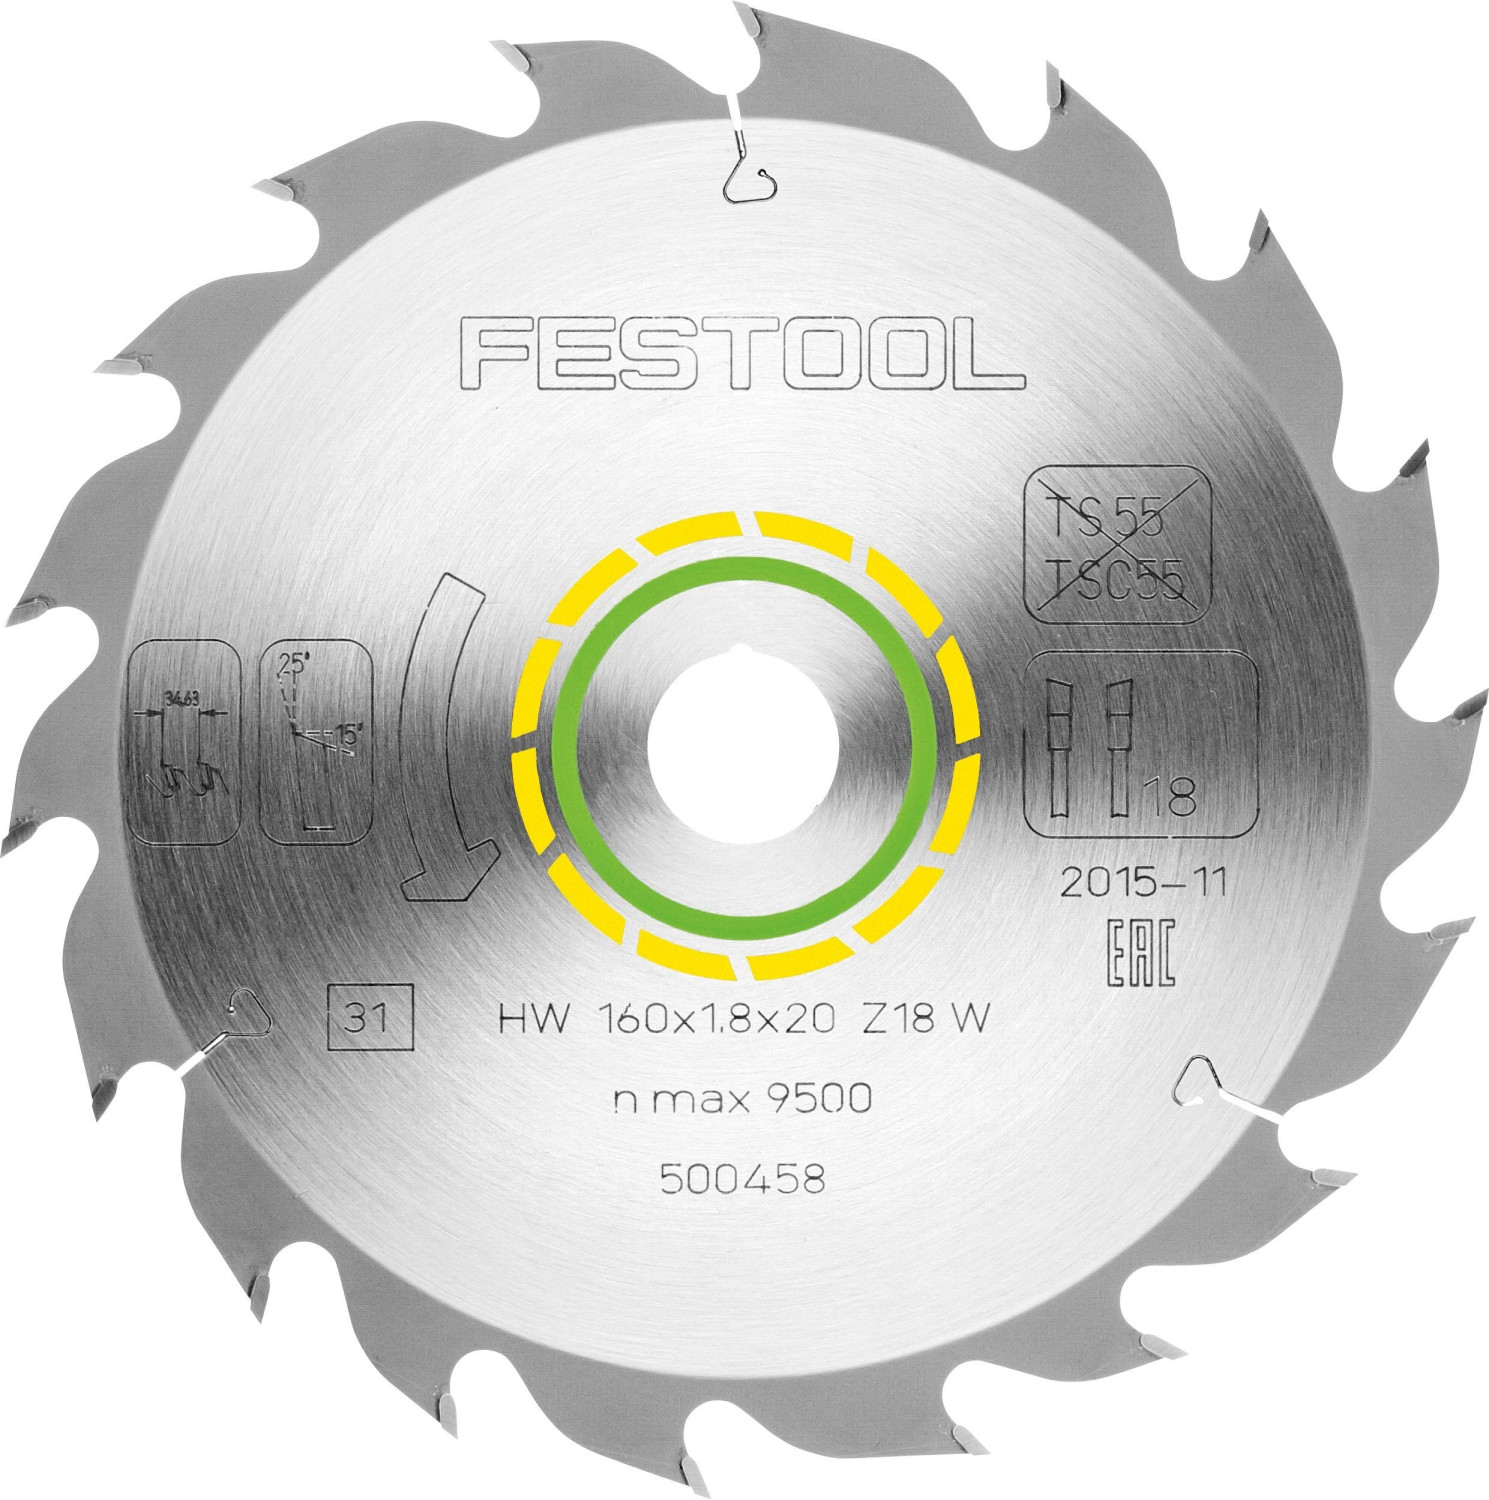 Festool W18 (500458)